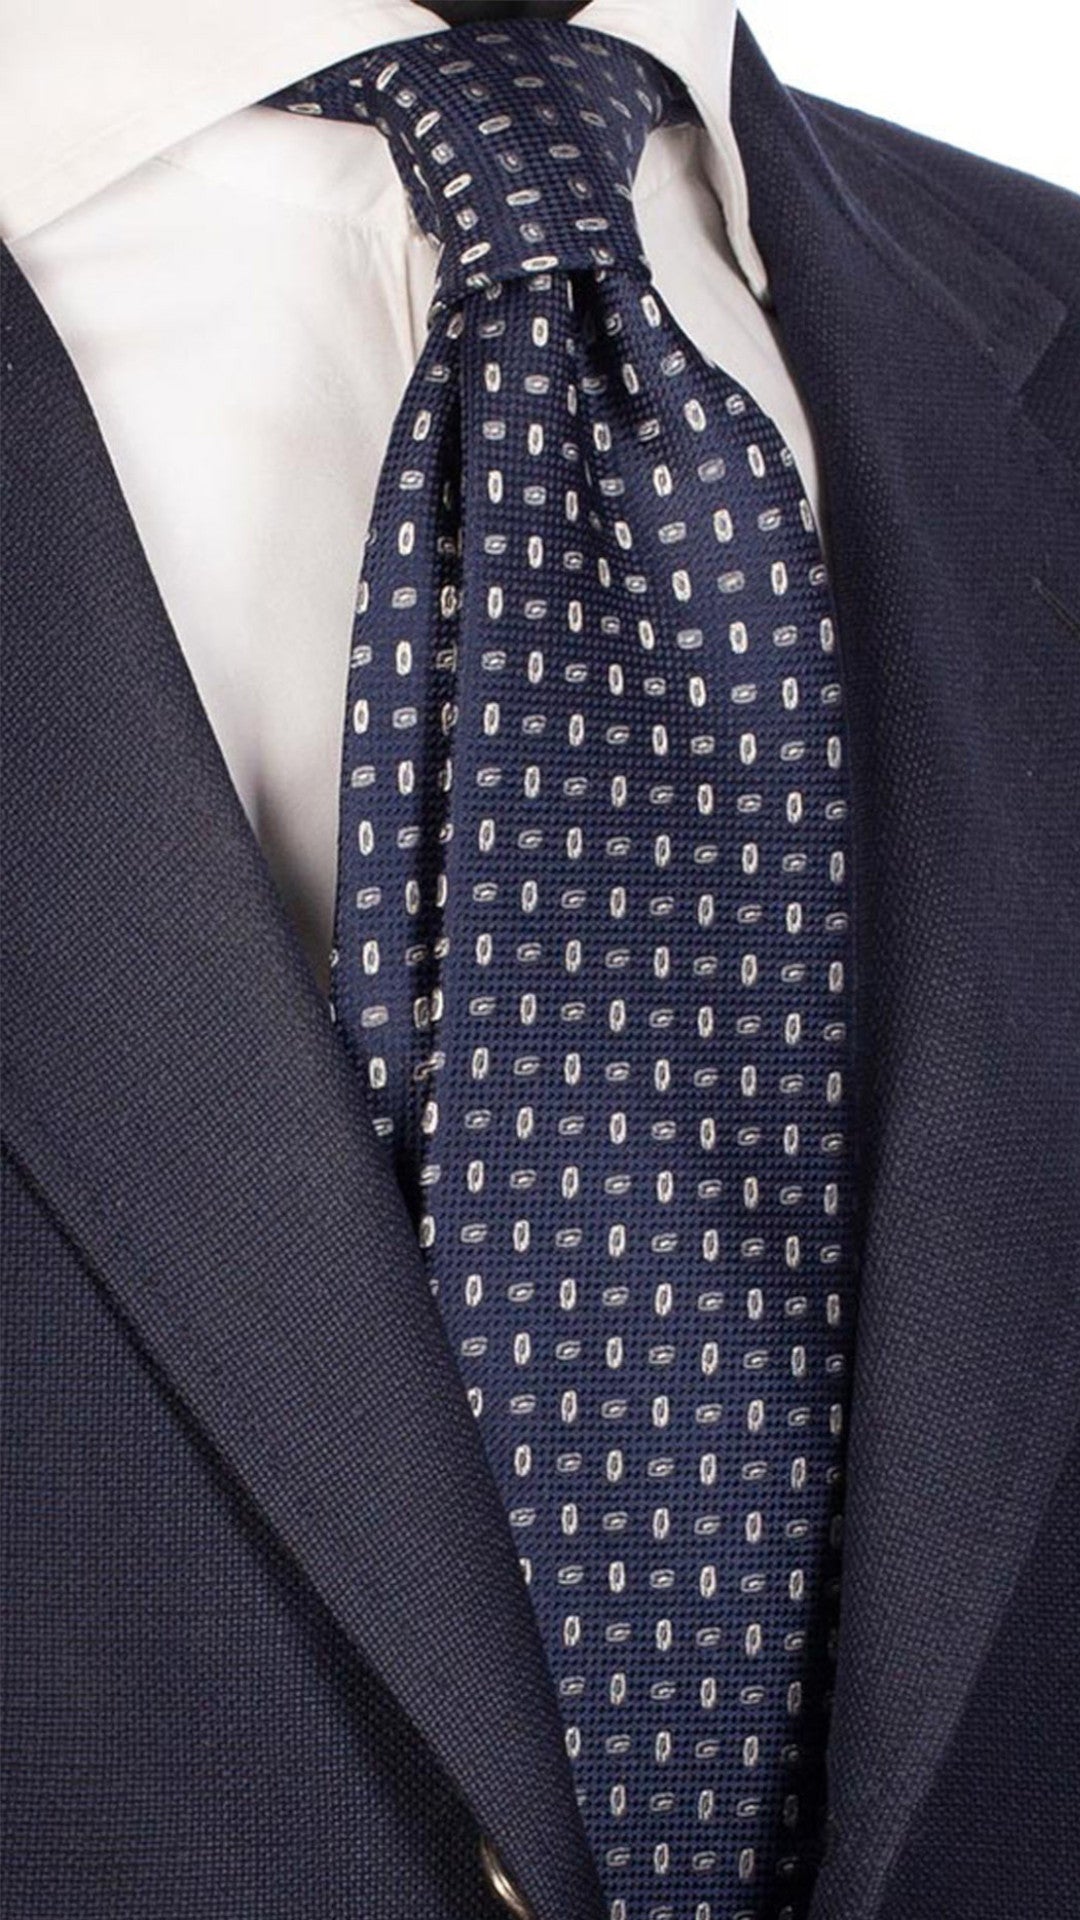 Cravatta da Cerimonia di Seta Blu a Fantasia Grigio Chiaro Grigio Scuro CY3144 Made in Italy Graffeo Cravatte